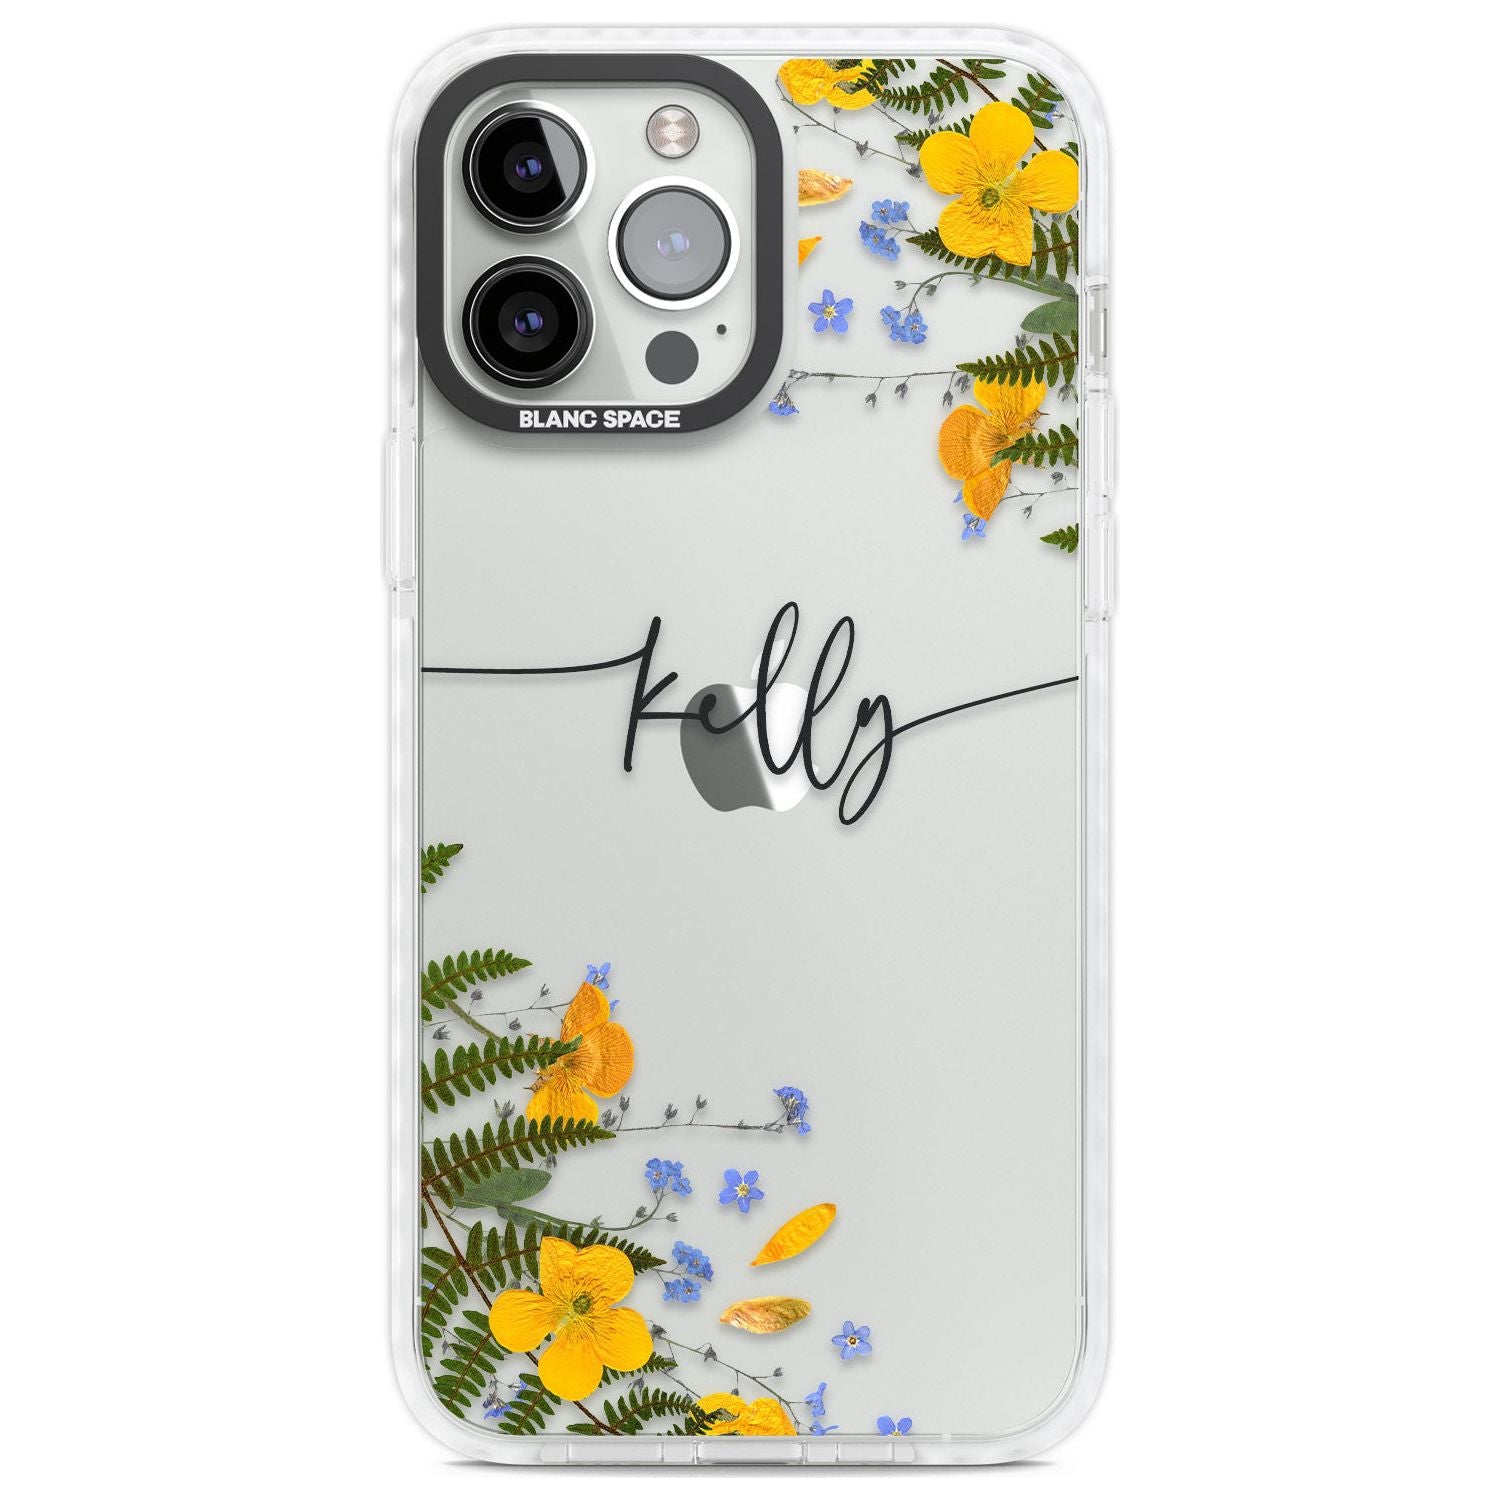 Personalised Ferns & Wildflowers Custom Phone Case iPhone 13 Pro Max / Impact Case,iPhone 14 Pro Max / Impact Case Blanc Space